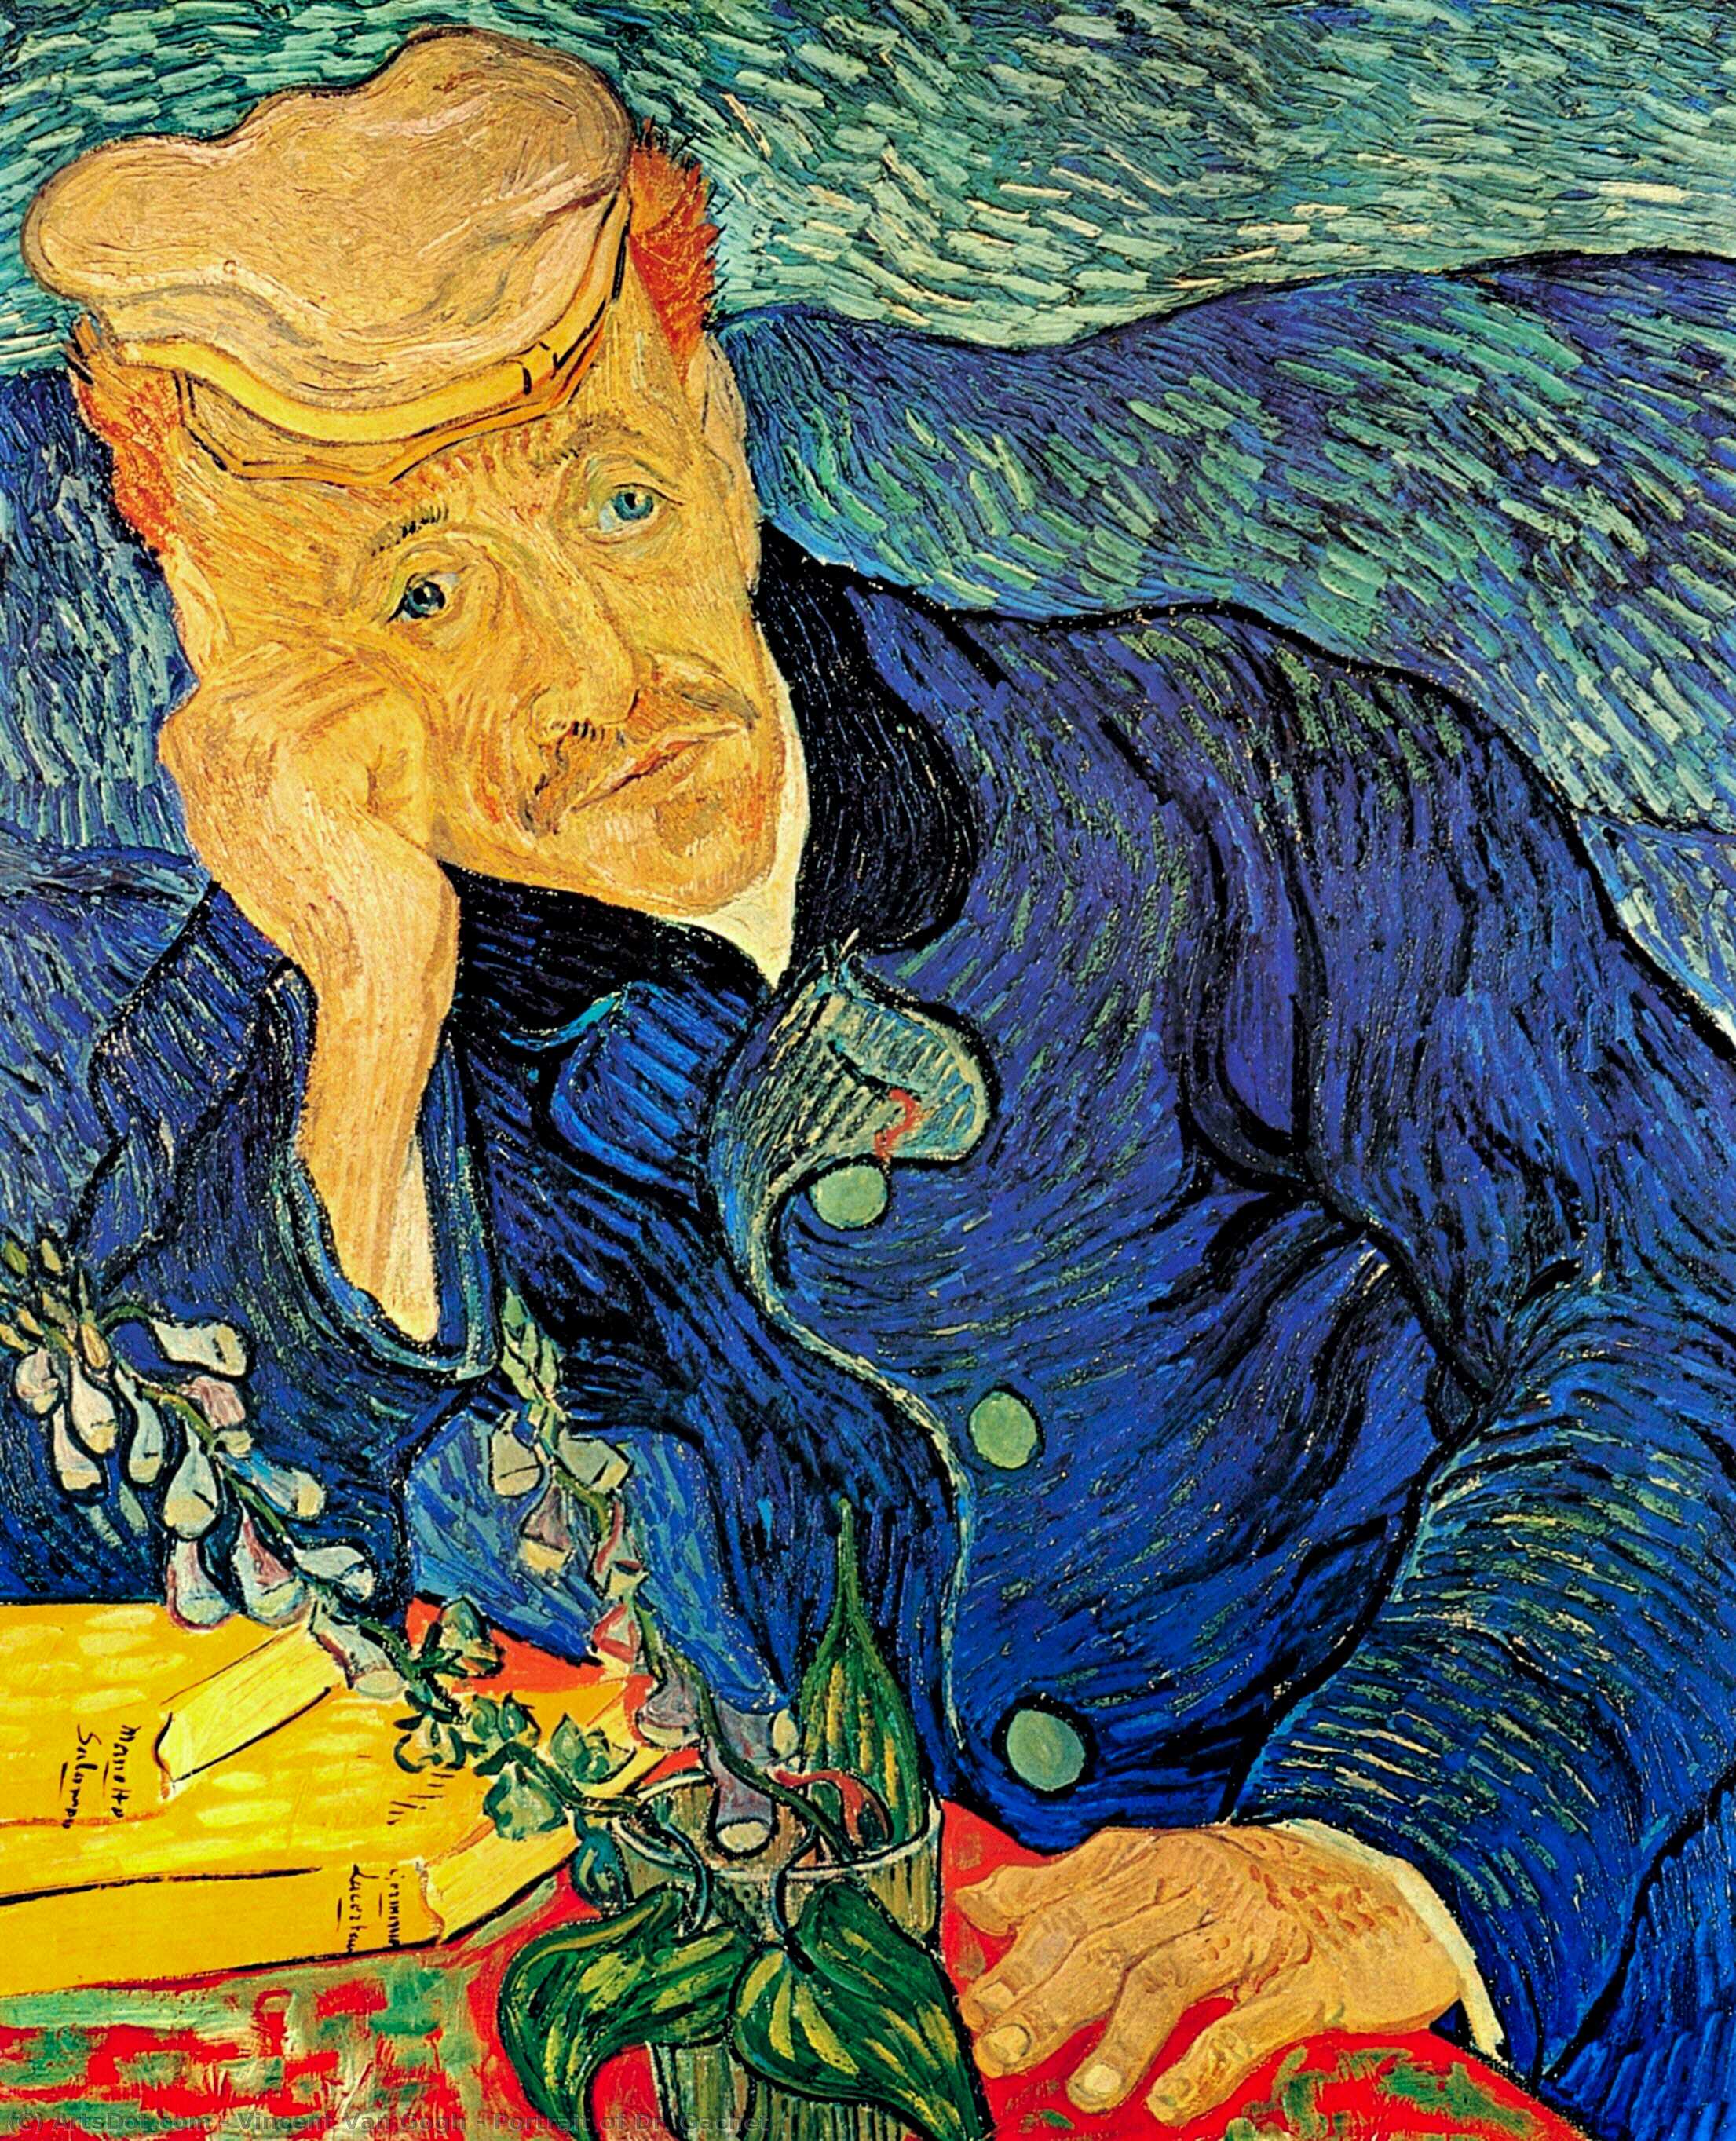 Achat Reproductions De Peintures Portrait du Dr Gachet de Vincent Van Gogh (1853-1890, Netherlands) | ArtsDot.com